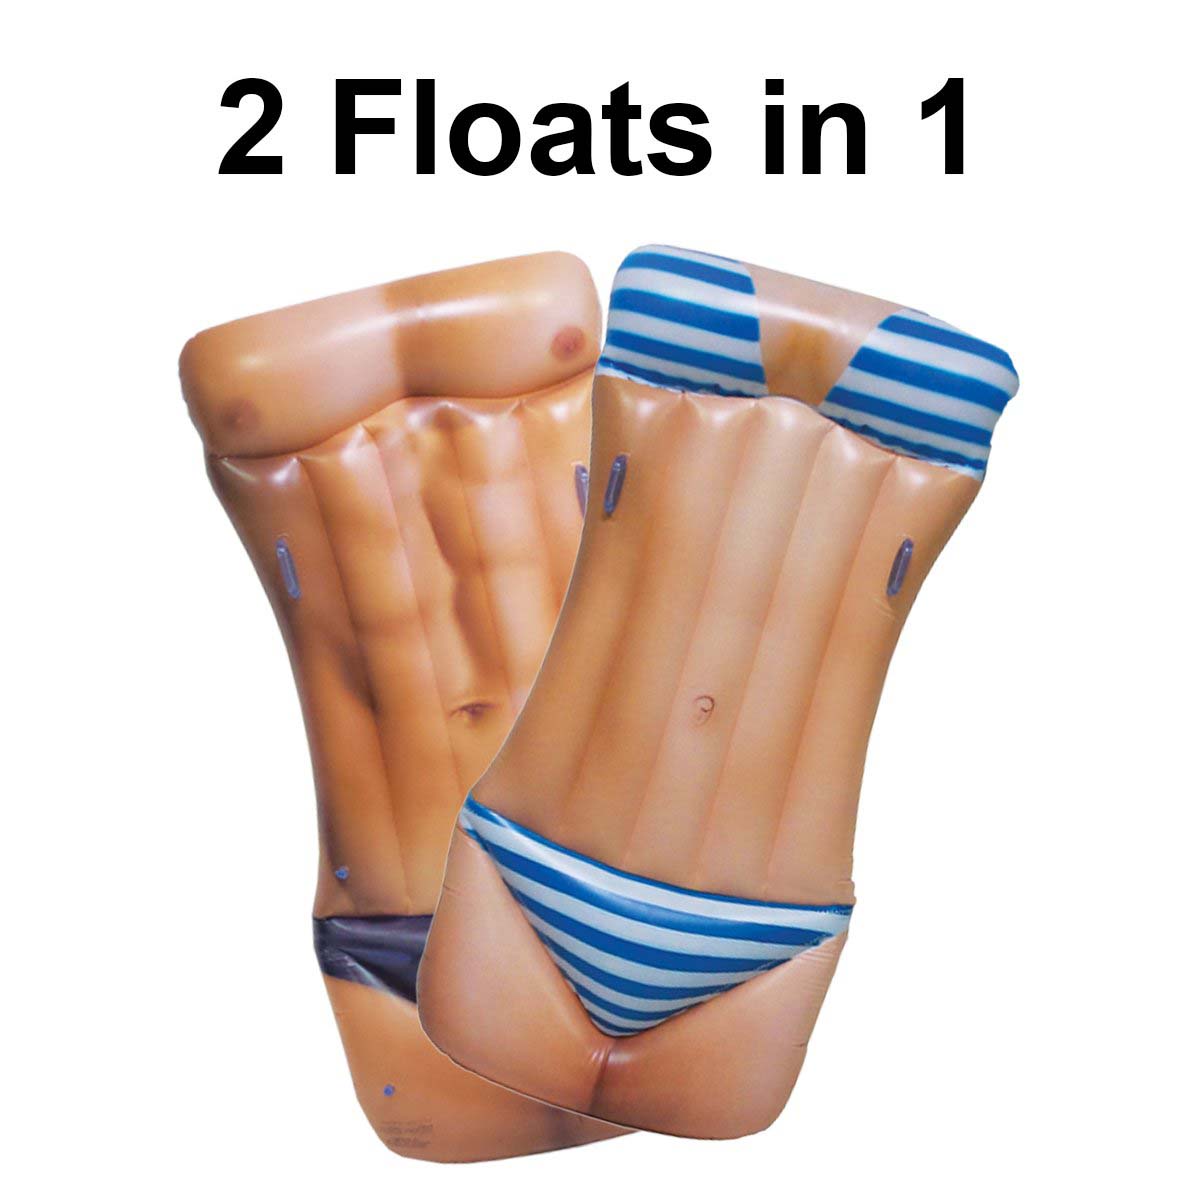 FUN-HOT01 72 inch Man/Woman Hot Body Float _Dual Side